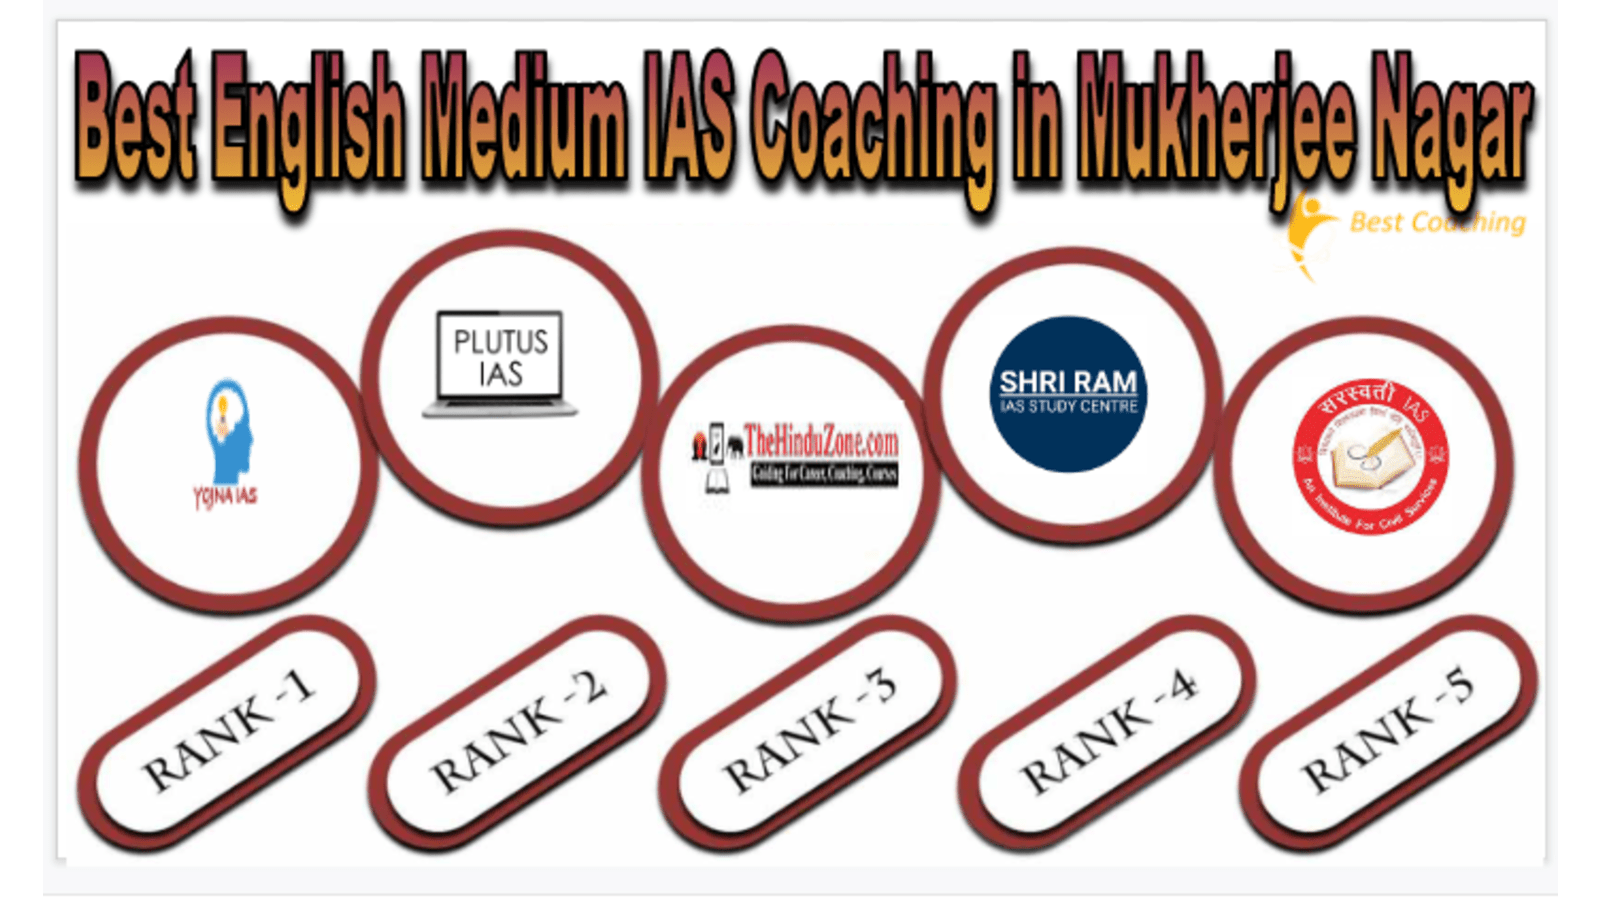 Best English Medium IAS Coaching in Mukherjee Nagar